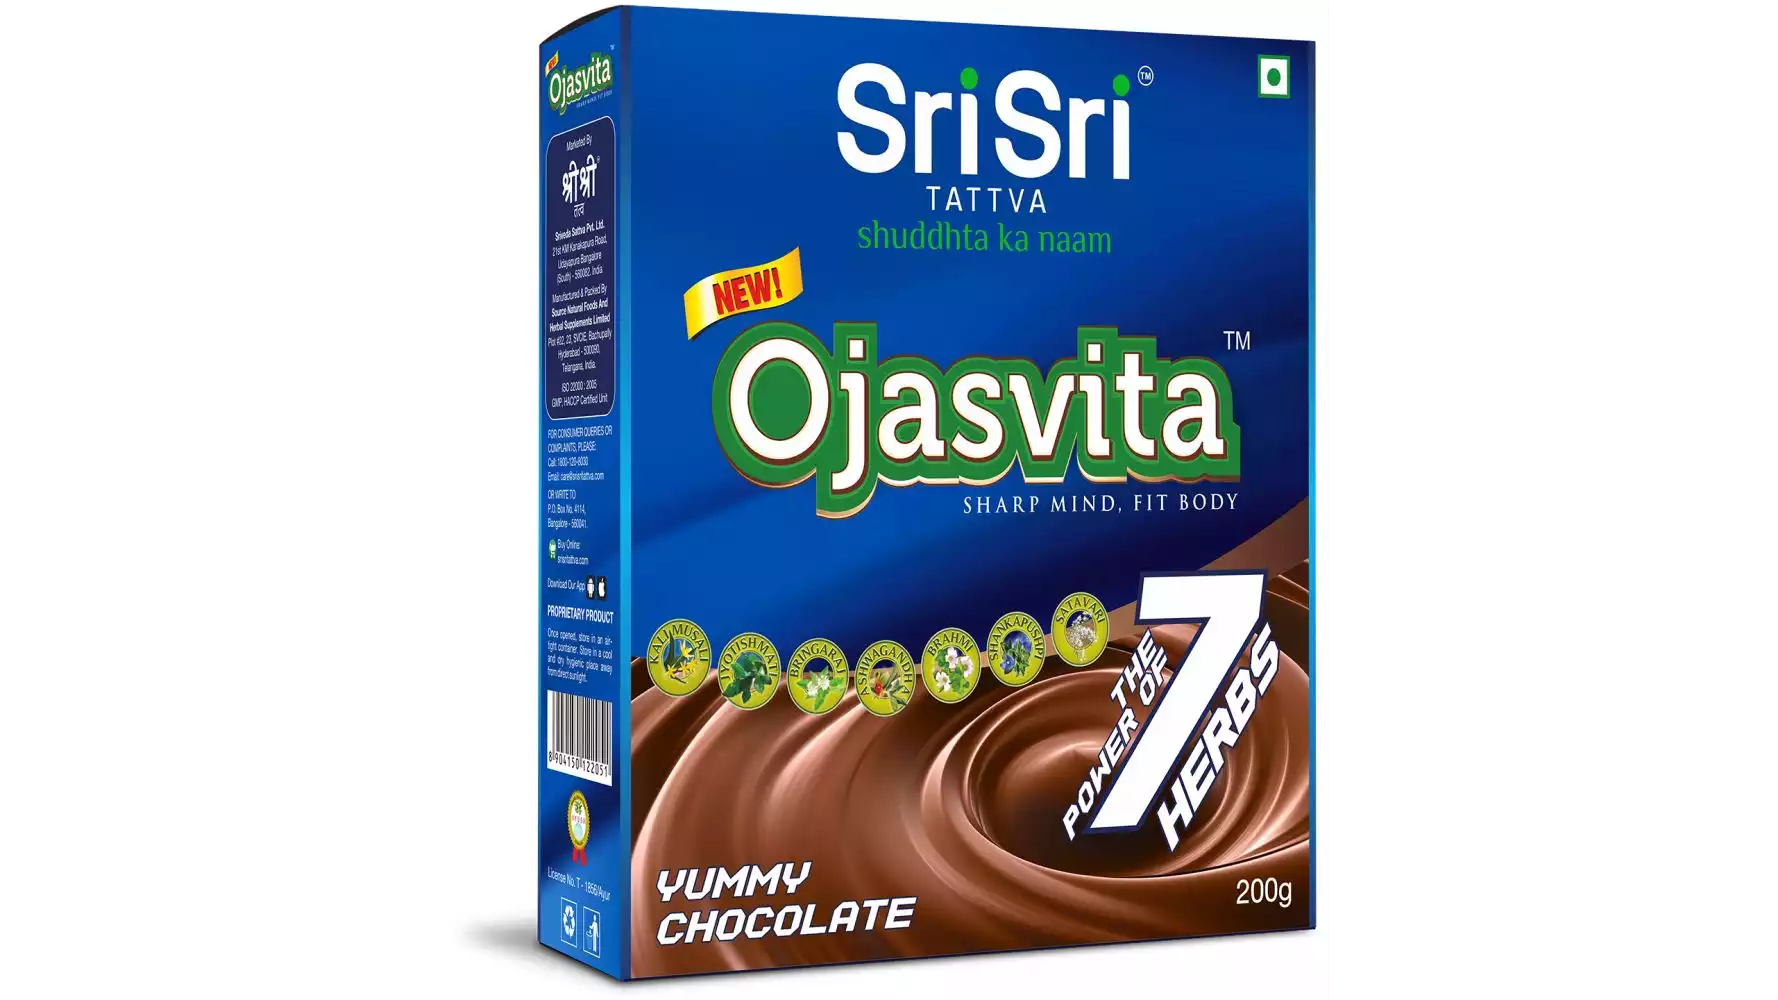 Sri Sri Tattva Ojasvita Chocolate Box Refill (200g)